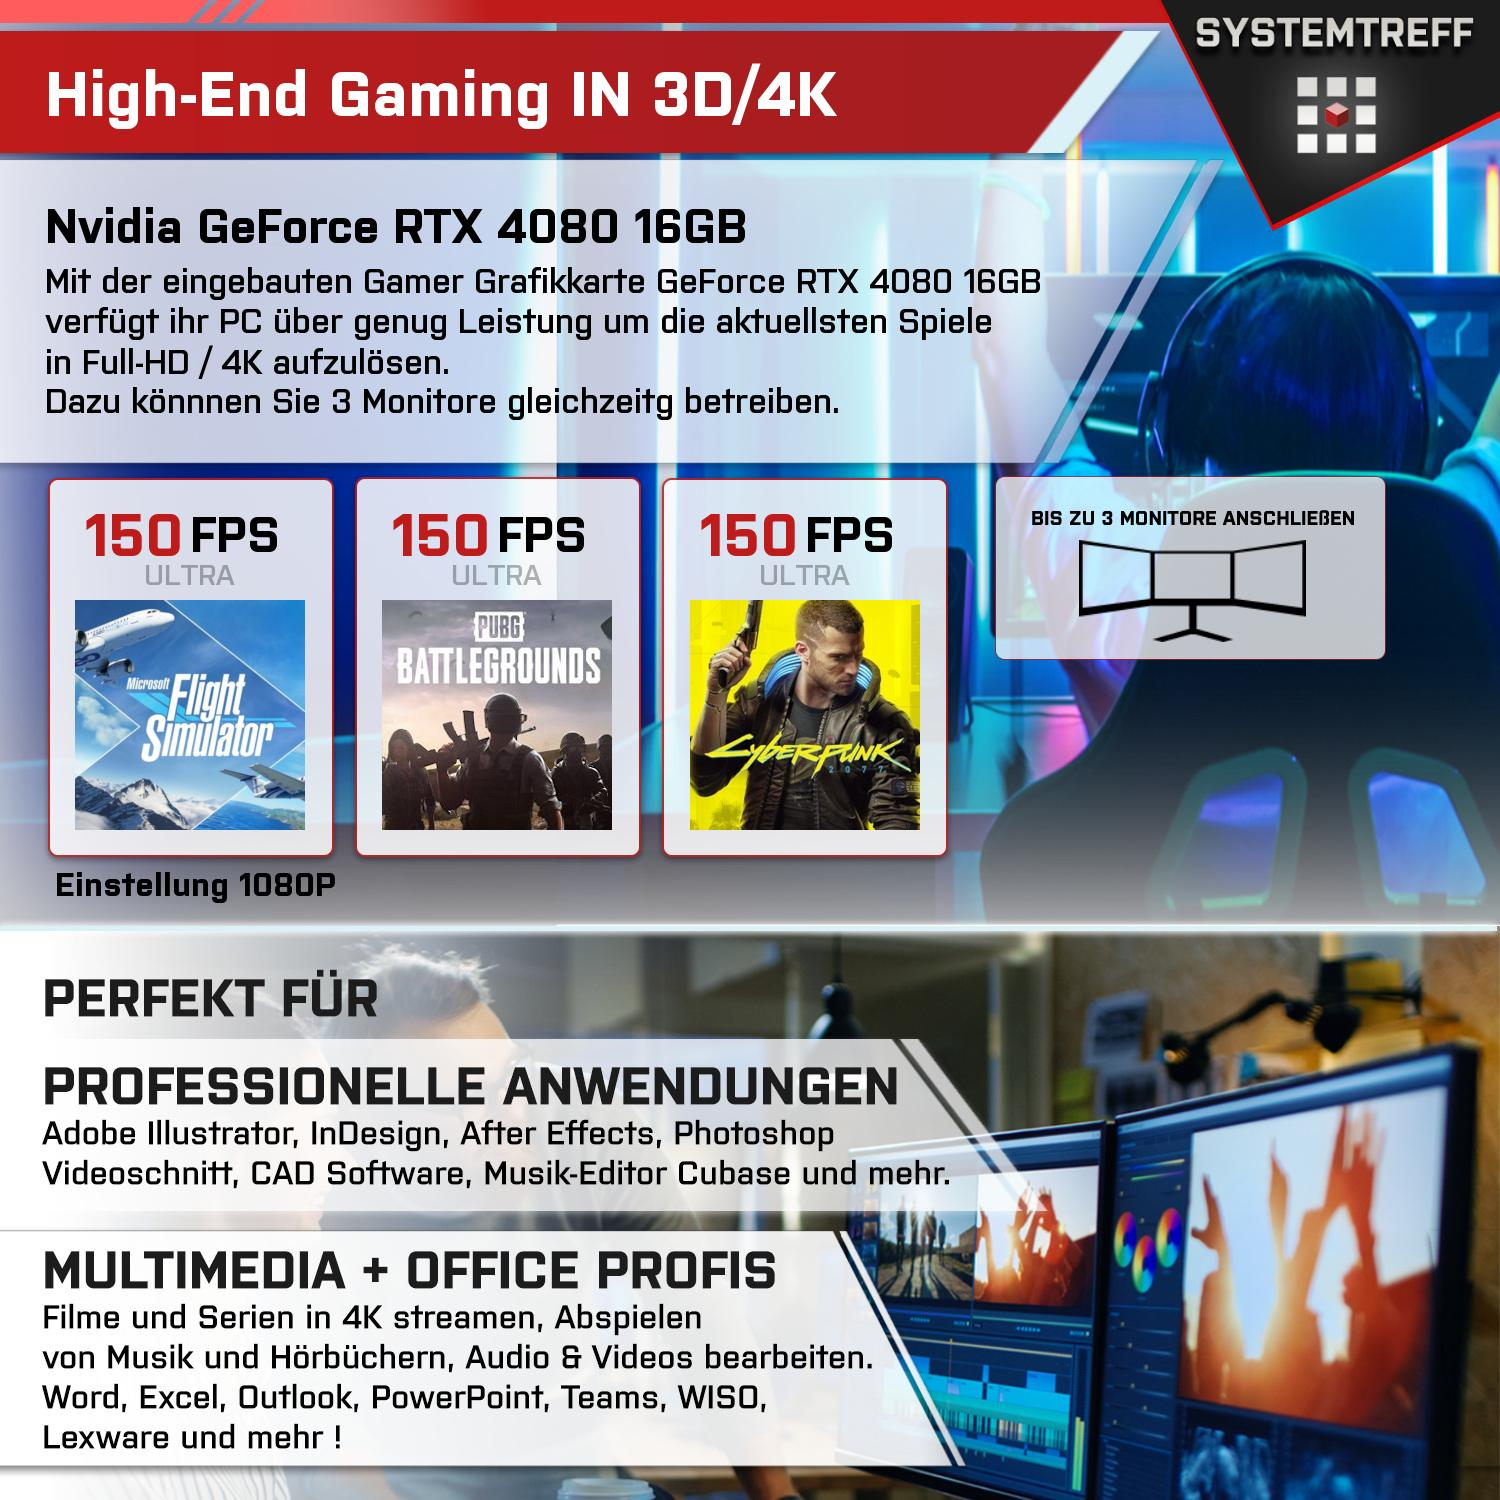 SYSTEMTREFF Gaming Komplett mit 16GB i9-13900K Intel 2000 GeForce RAM, 4080 16 GB GB Prozessor, 32 Core GB GDDR6, PC Komplett i9-13900K, mSSD, Nvidia RTX